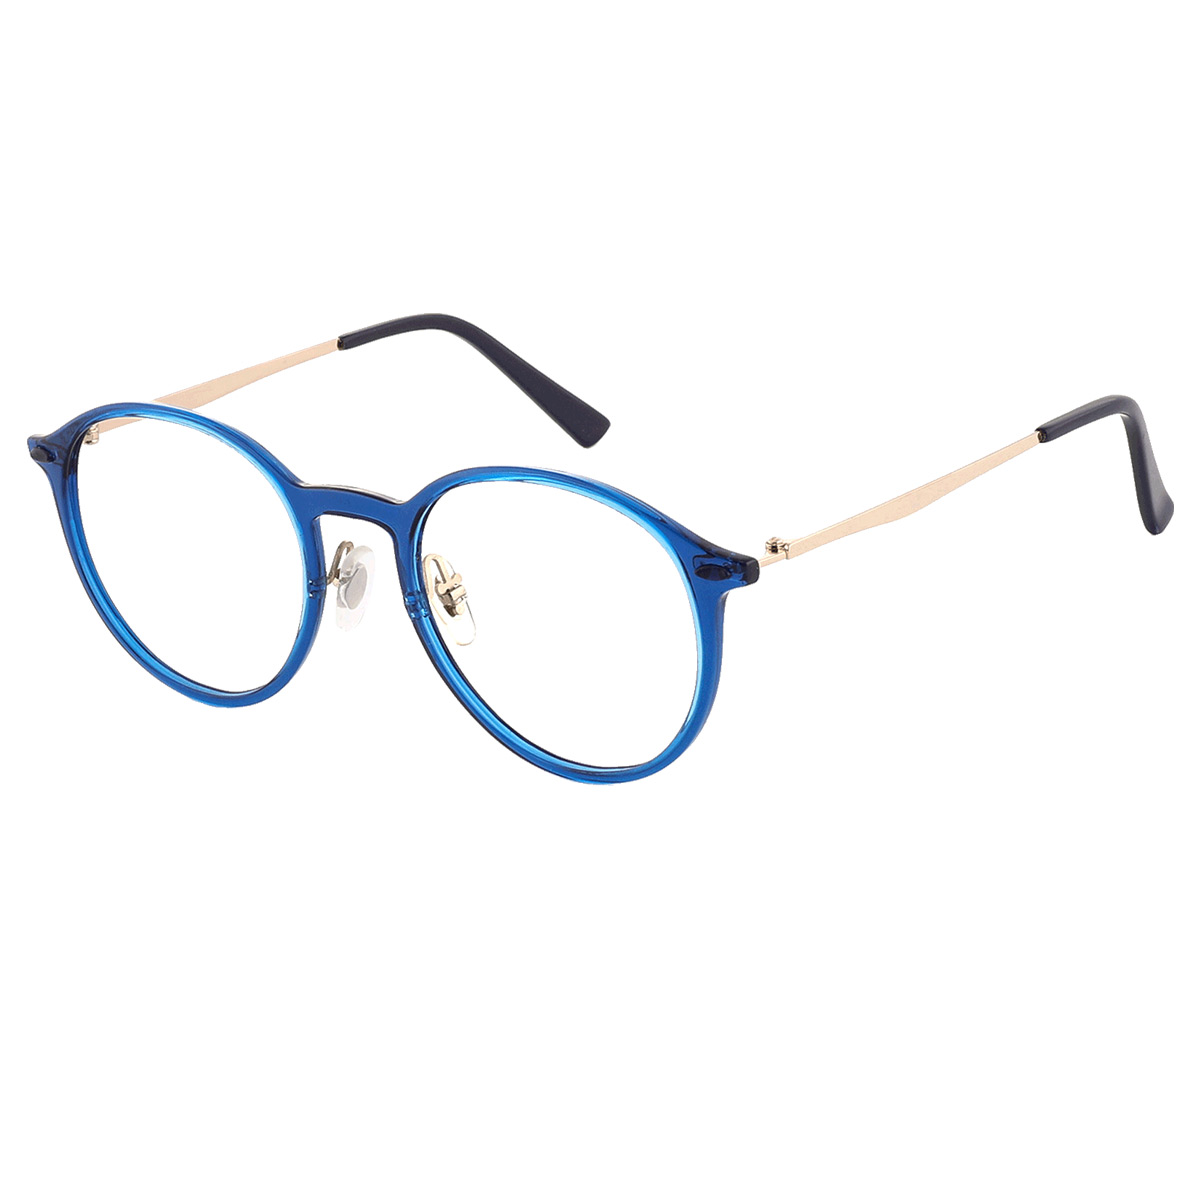 Hancock - Oval Gold-Blue Reading Glasses for Men & Women